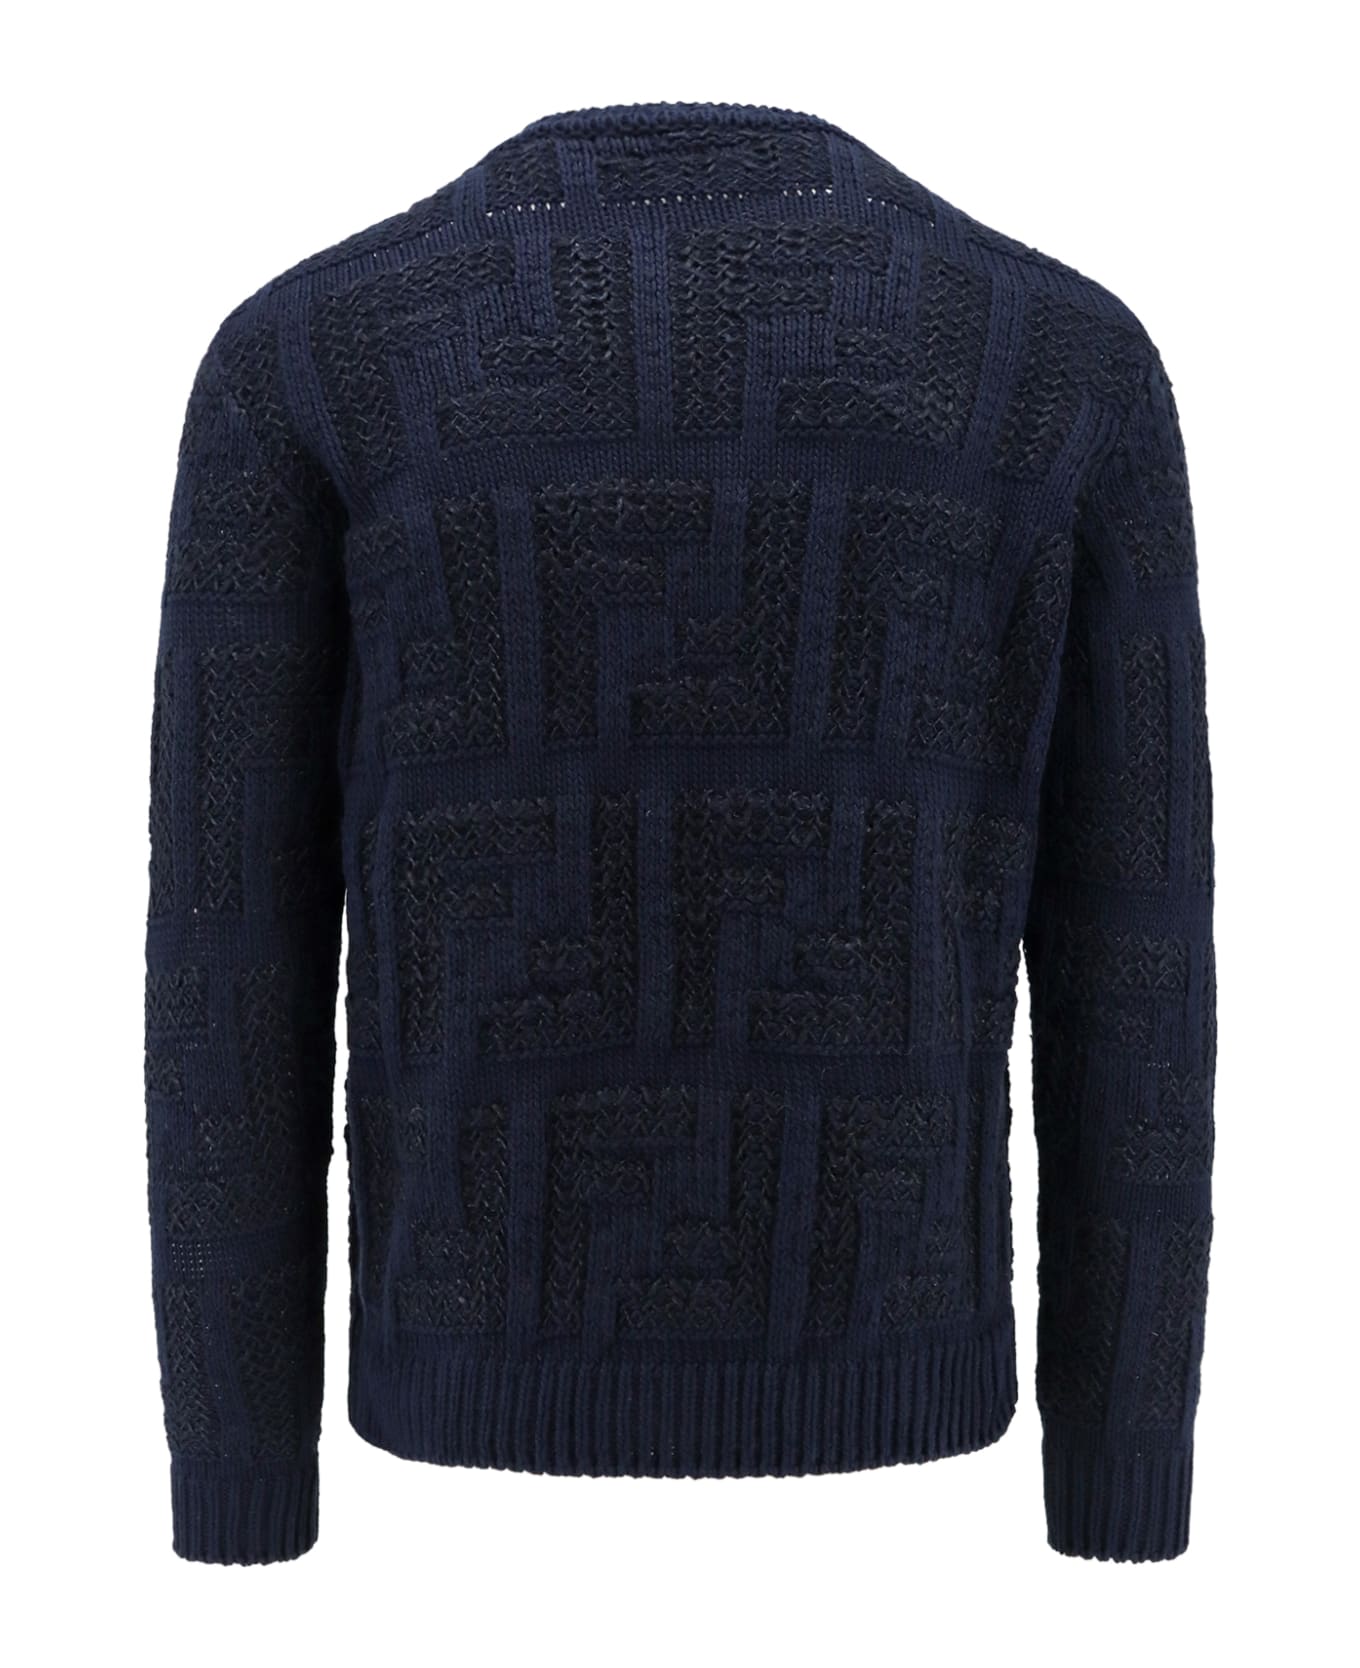 Fendi Sweater - Black ニットウェア